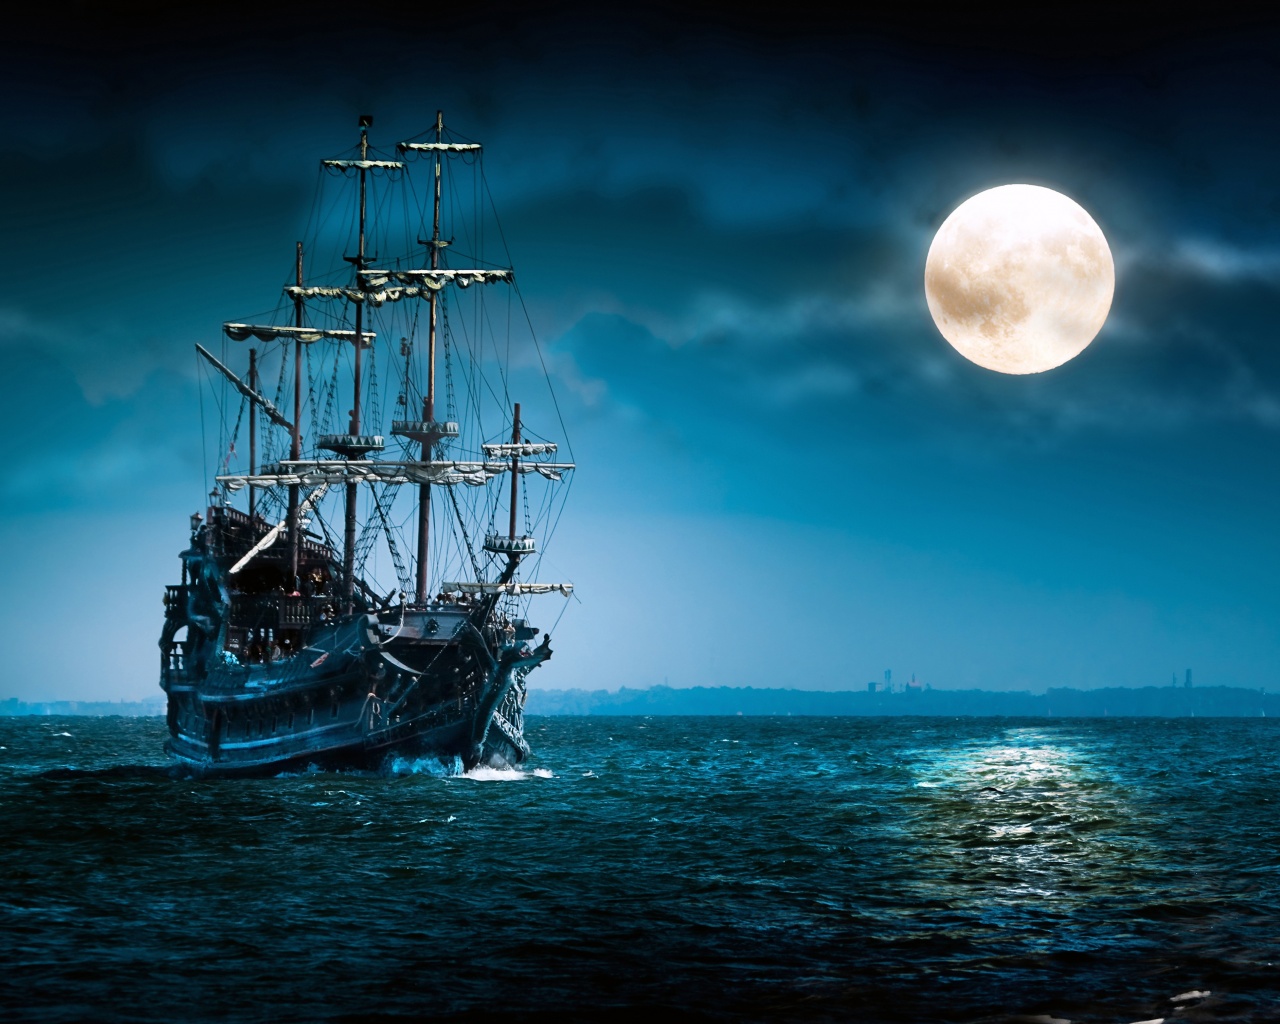 Sailboat Full Moon - Flying Dutchman